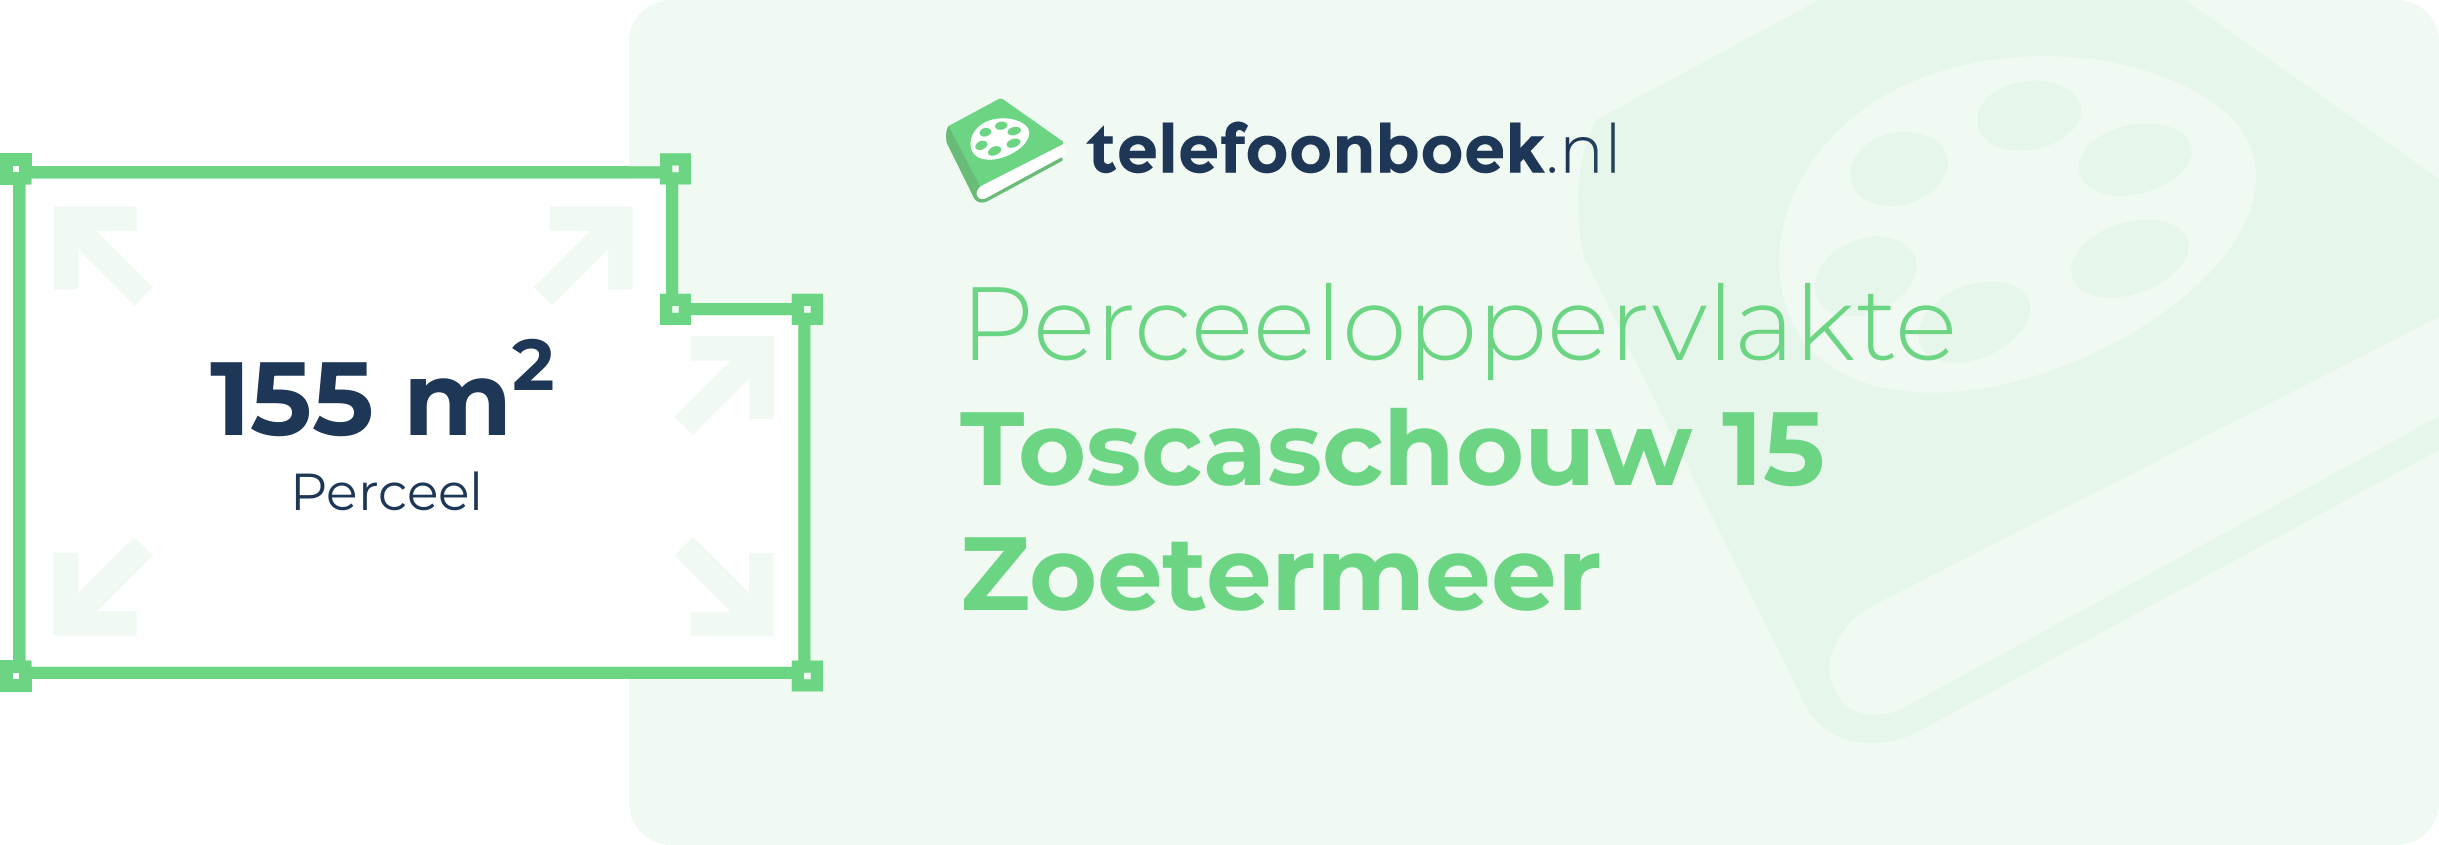 Perceeloppervlakte Toscaschouw 15 Zoetermeer